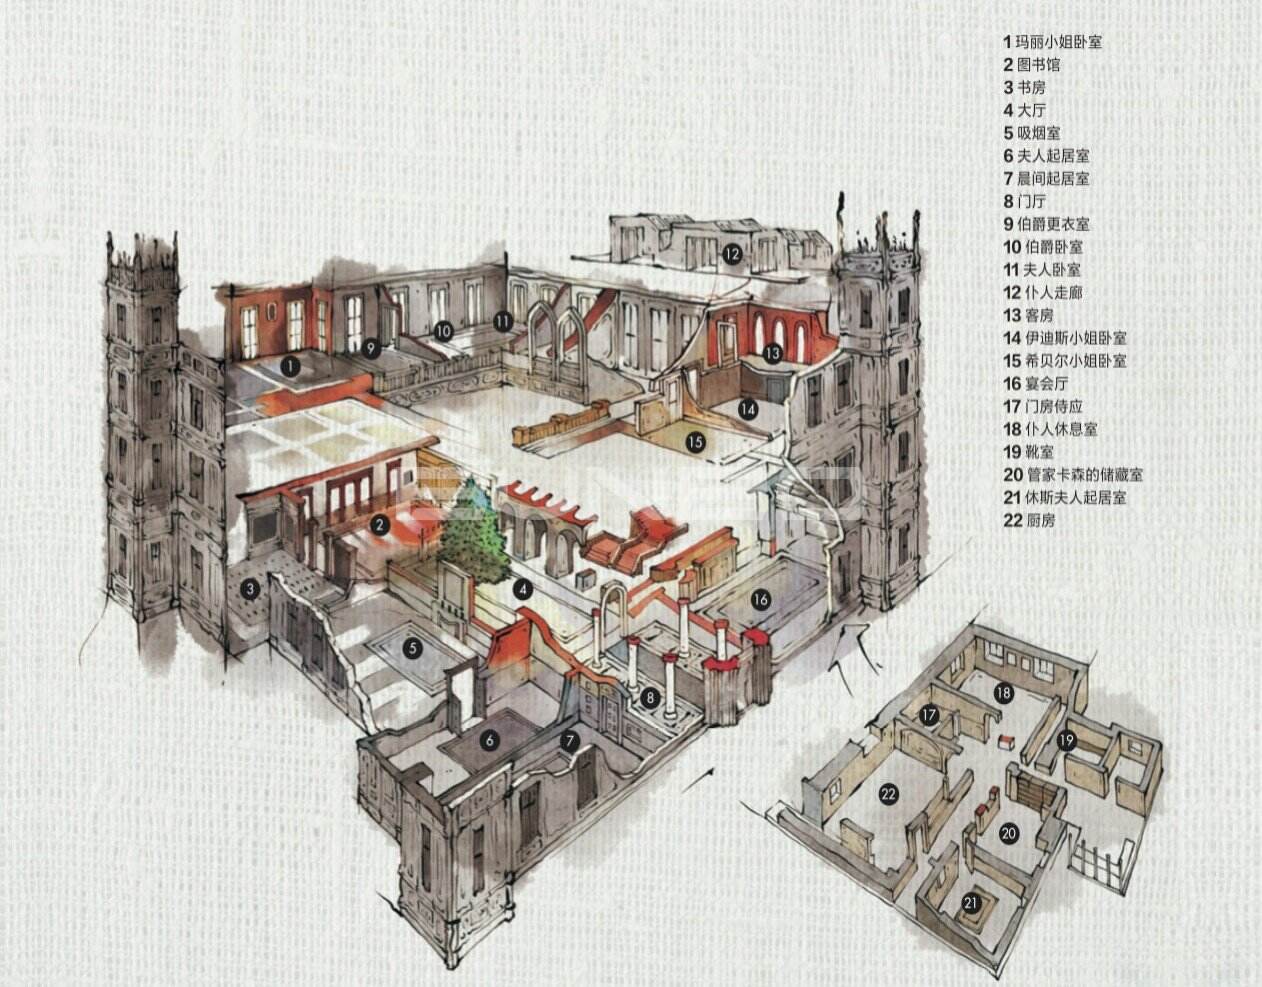 海克利尔城堡空间剖面图